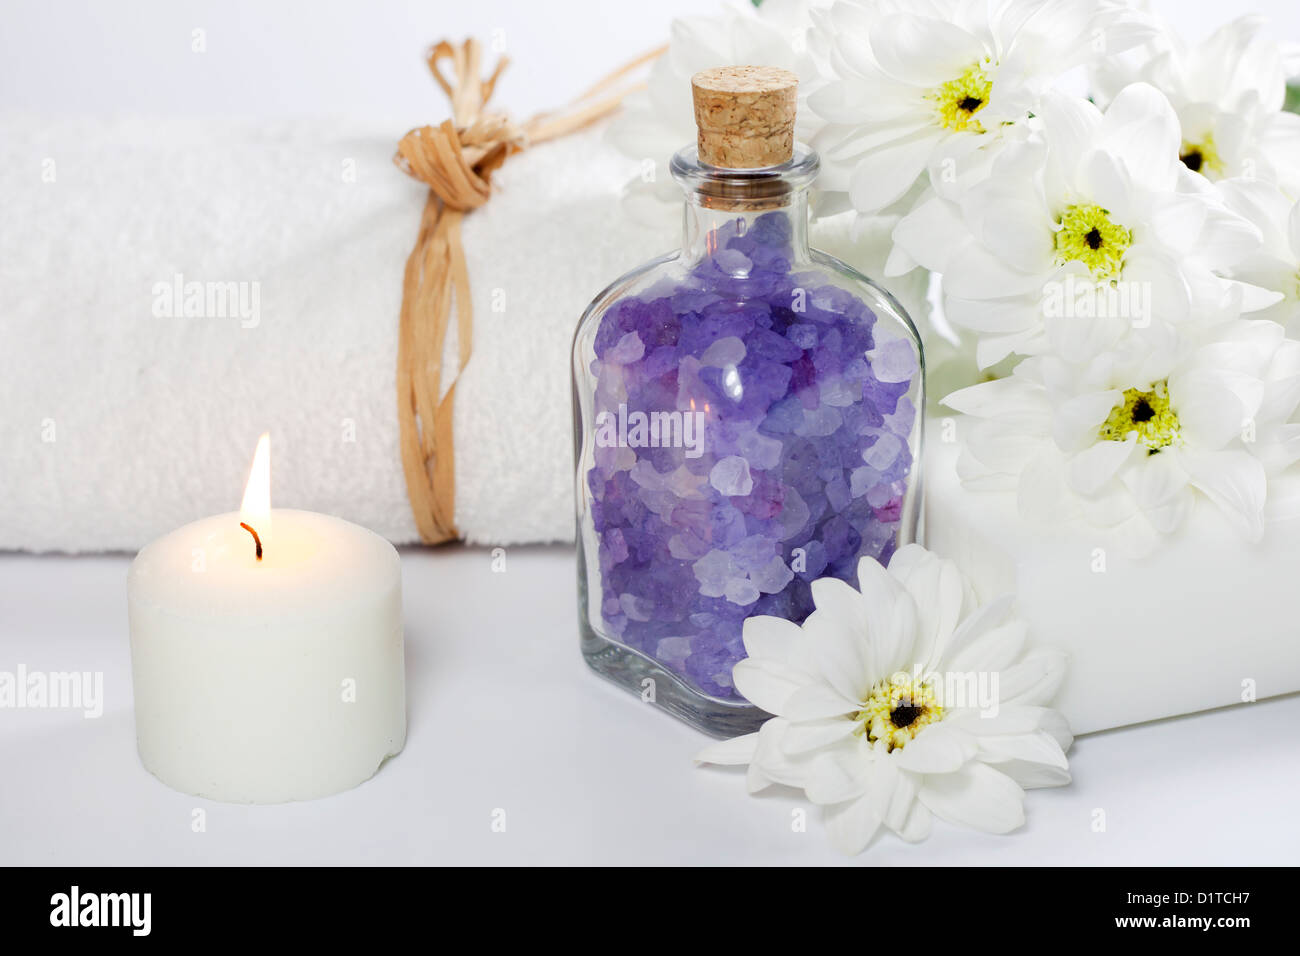 Bad Salz und Handtuch Spa Kosmetik-Konzept auf weißem Hintergrund Stockfoto